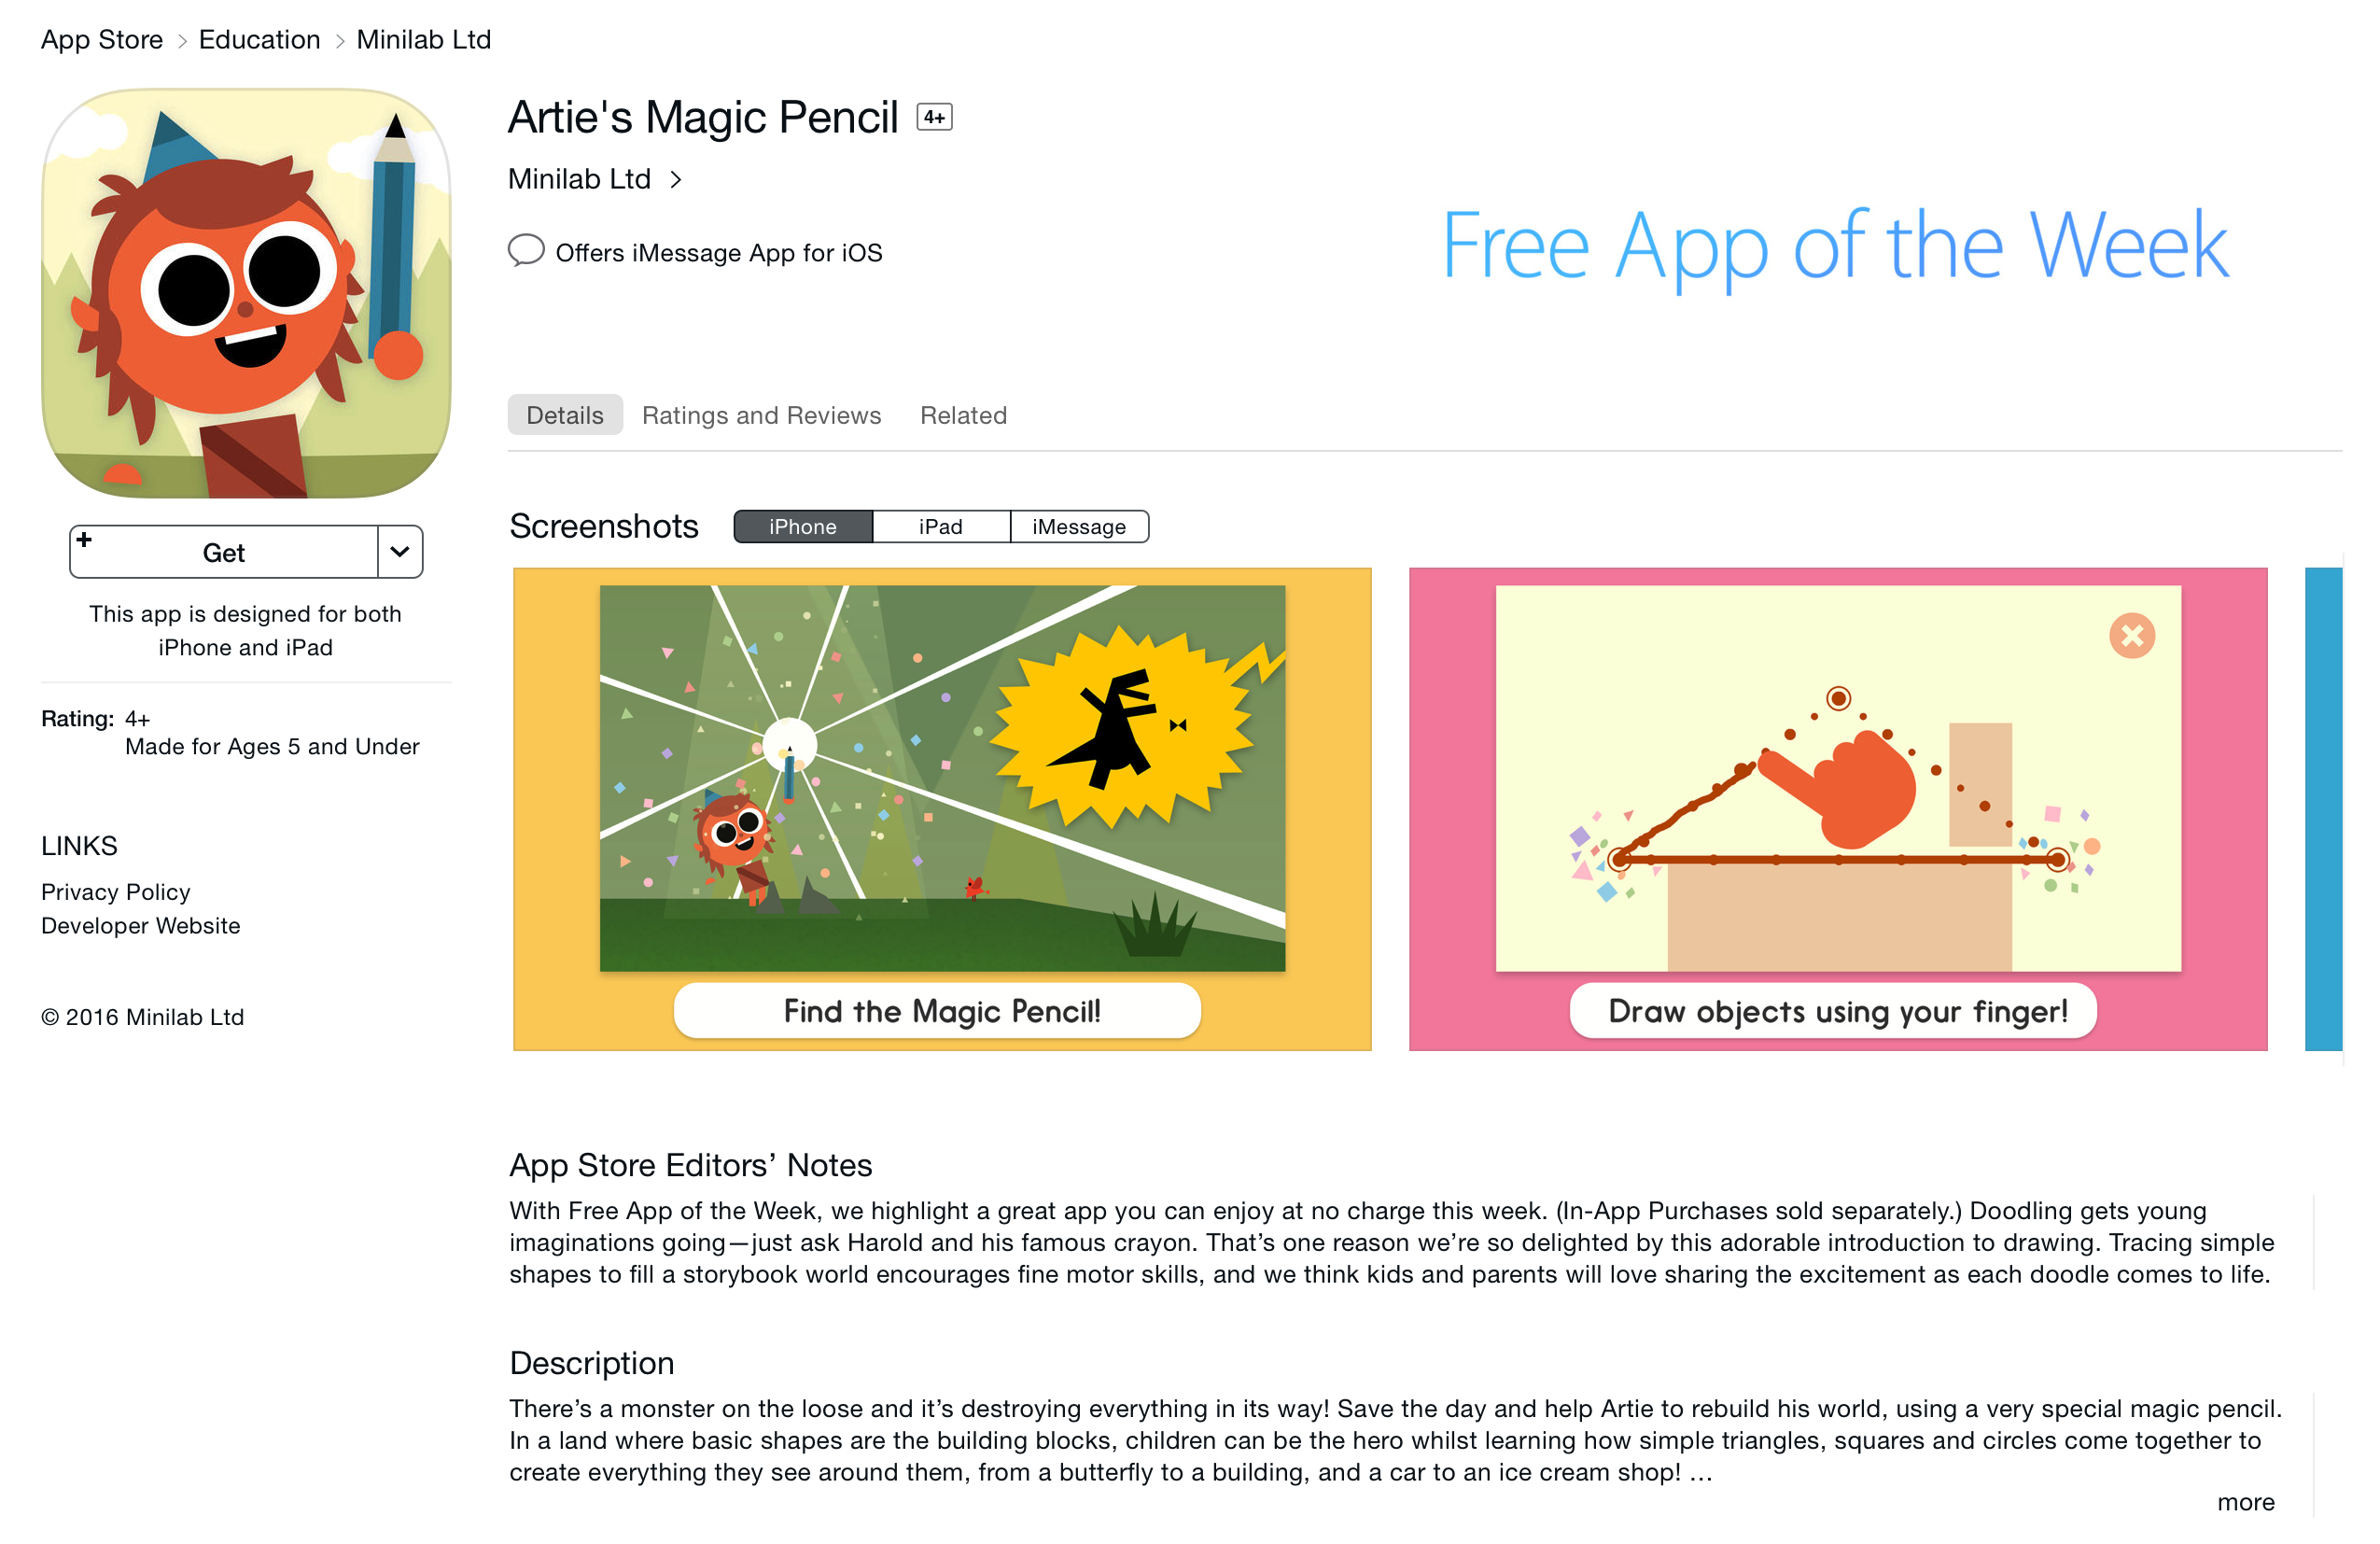 arties-magic-pencil-app-of-the-week-06